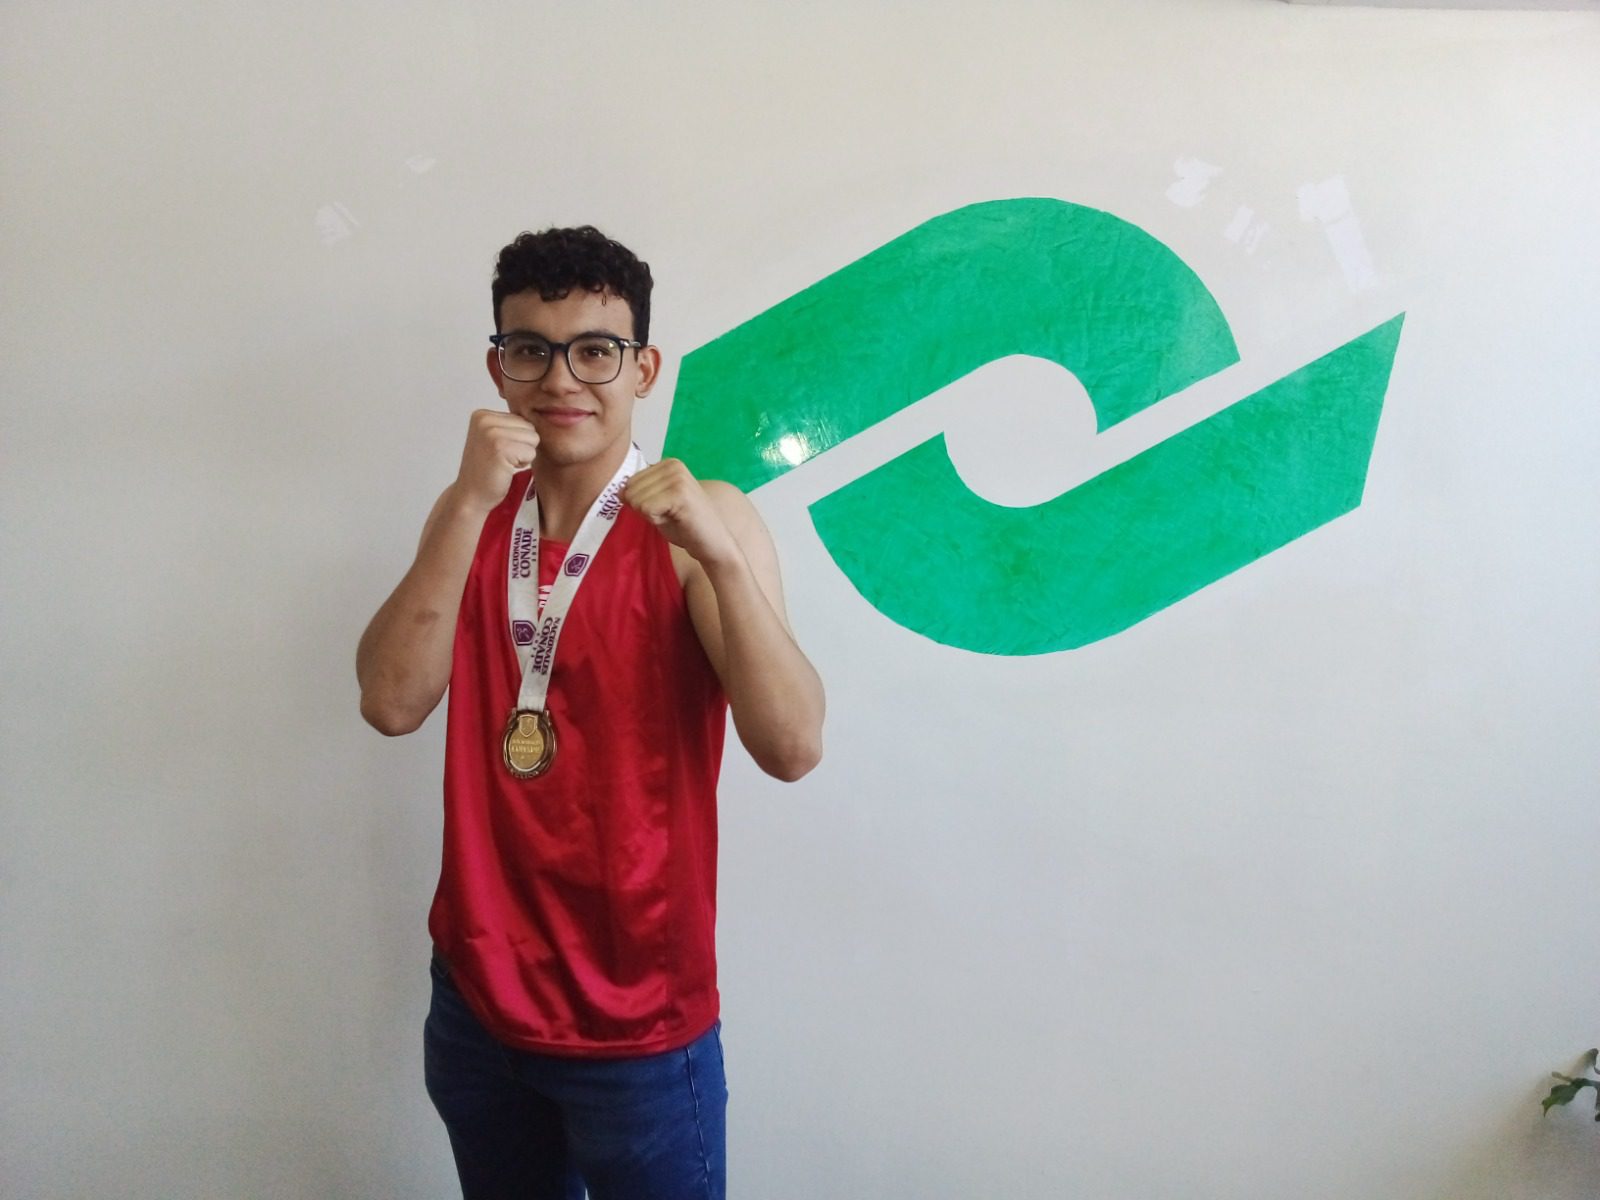 Representará el parralense Adrián Humberto a México en el Campeonato Mundial Juvenil de Box en Croacia